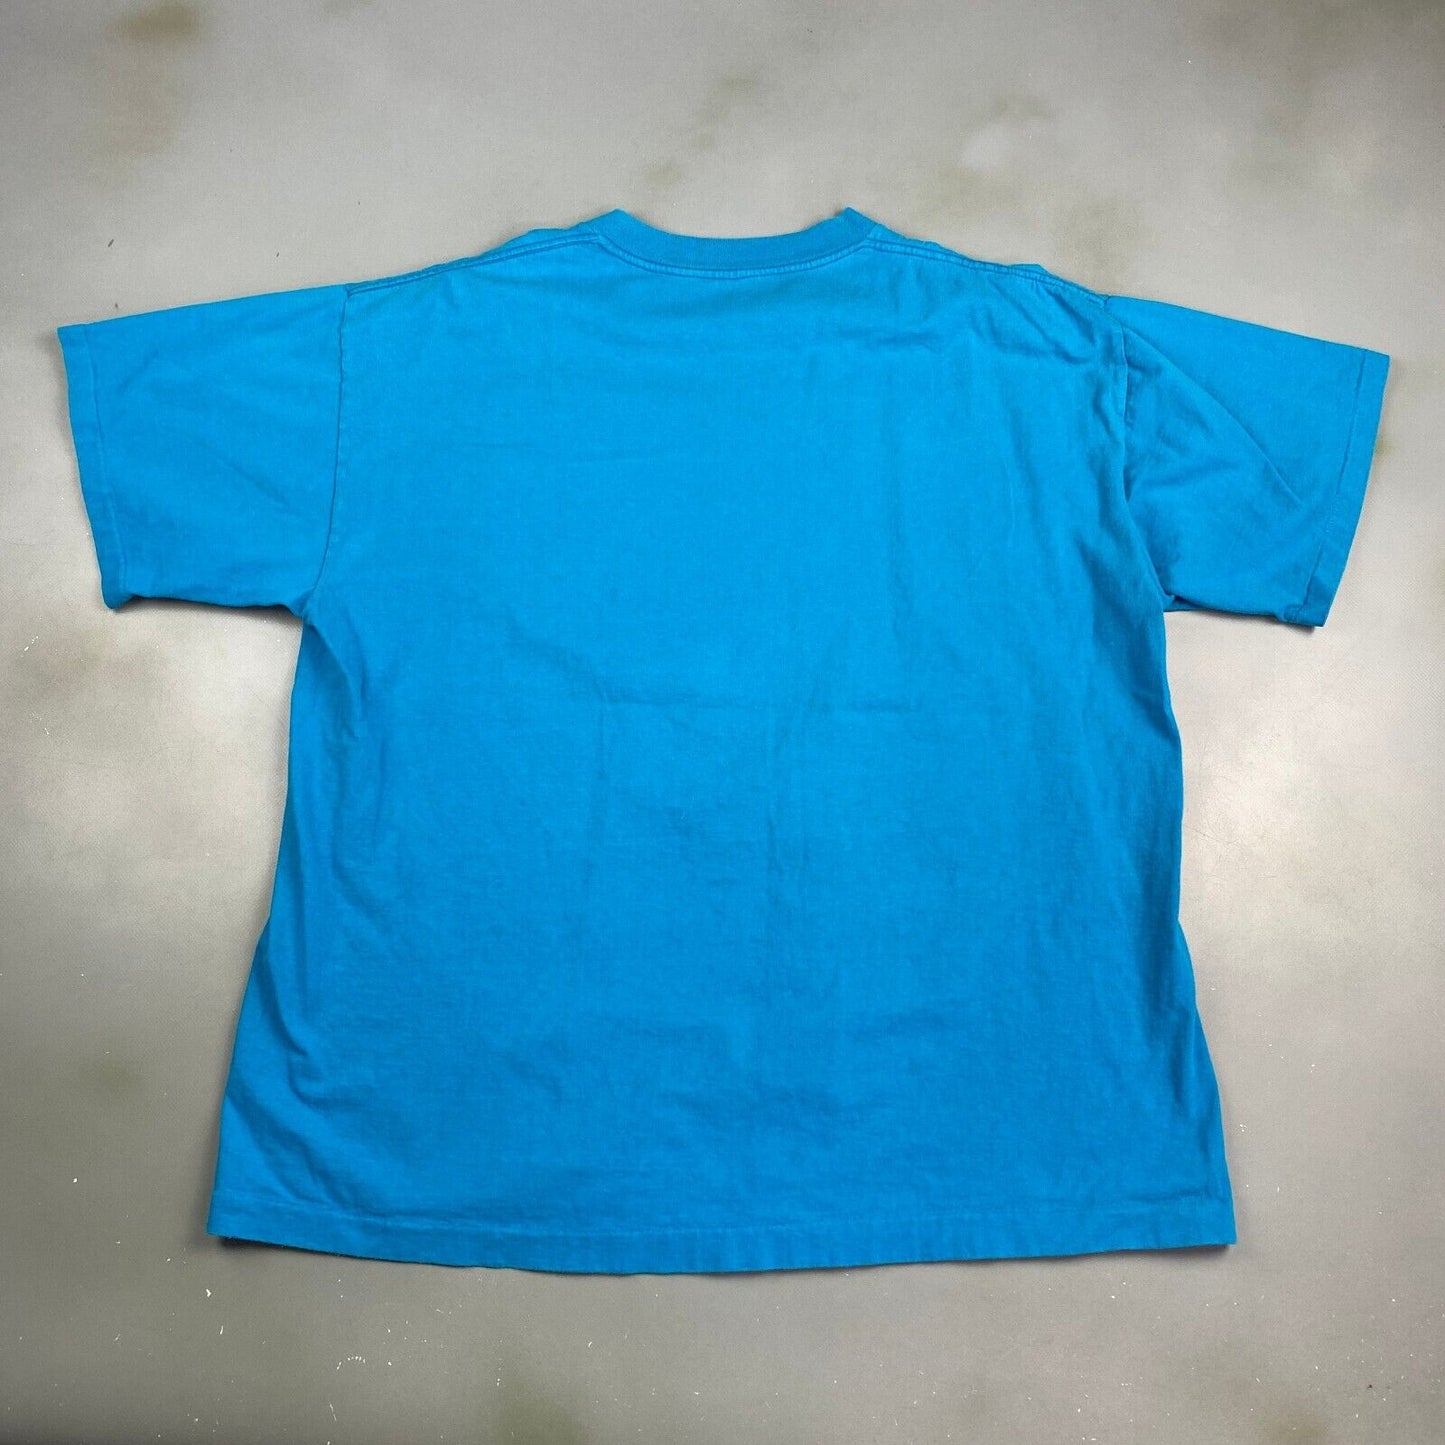 Vintage 90s LEVIS Guaranteed Satisfaction Blue T-Shirt sz XL Men Adult